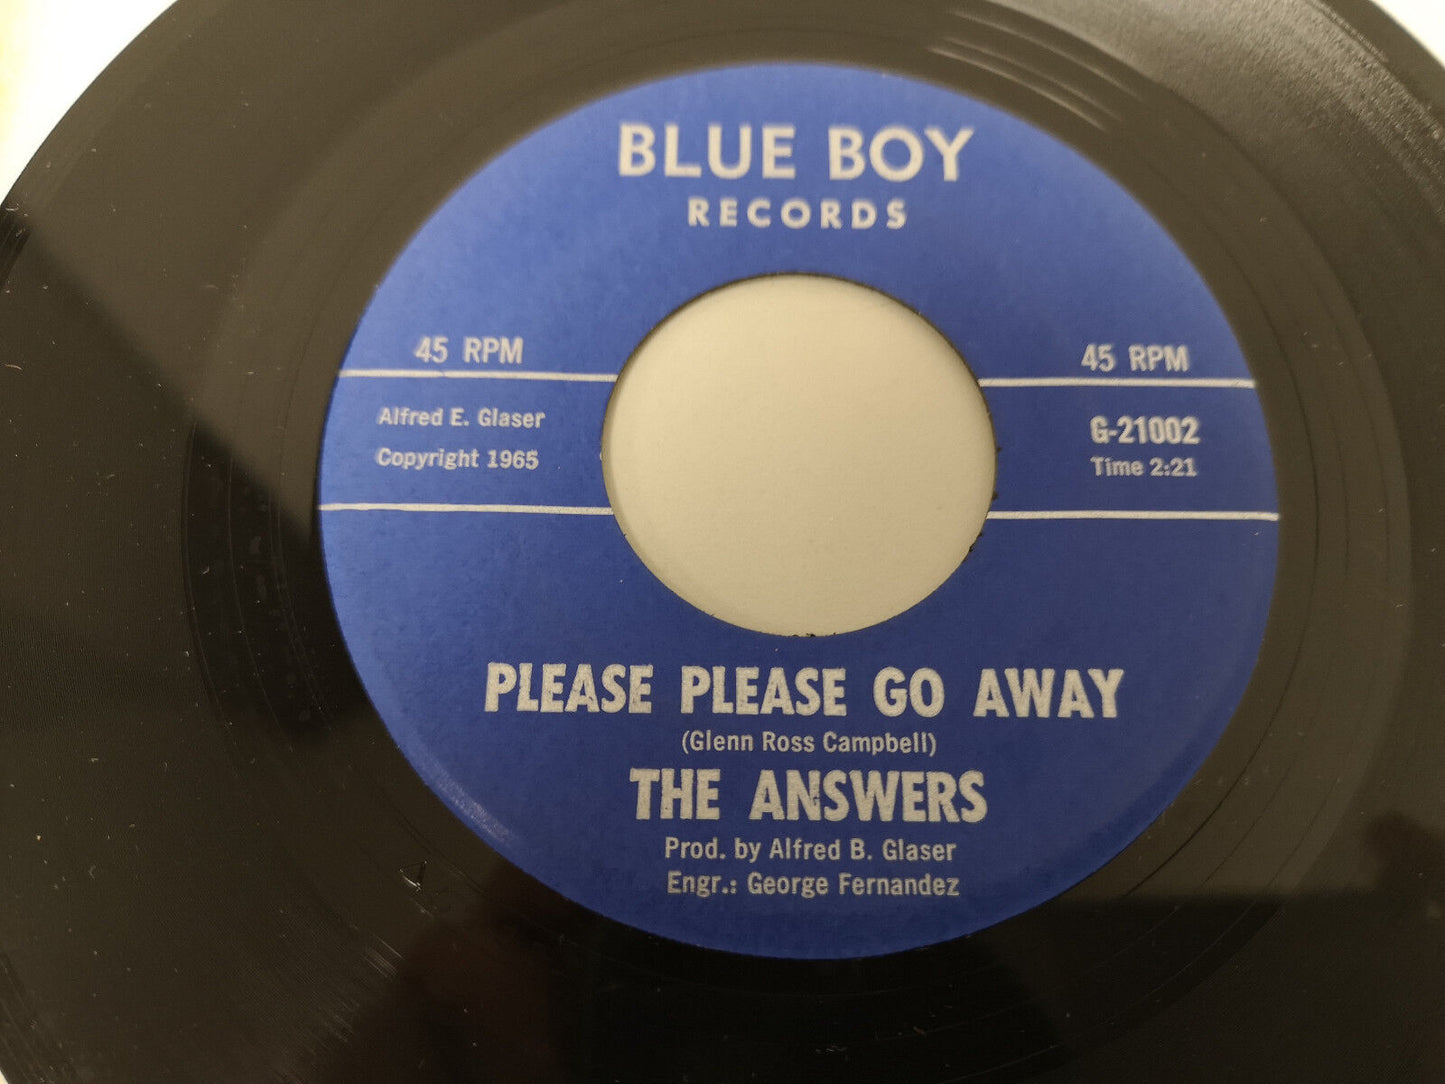 Answers "Fool Turn Around" Orig US 1965 M- (Pre-Misunderstood)